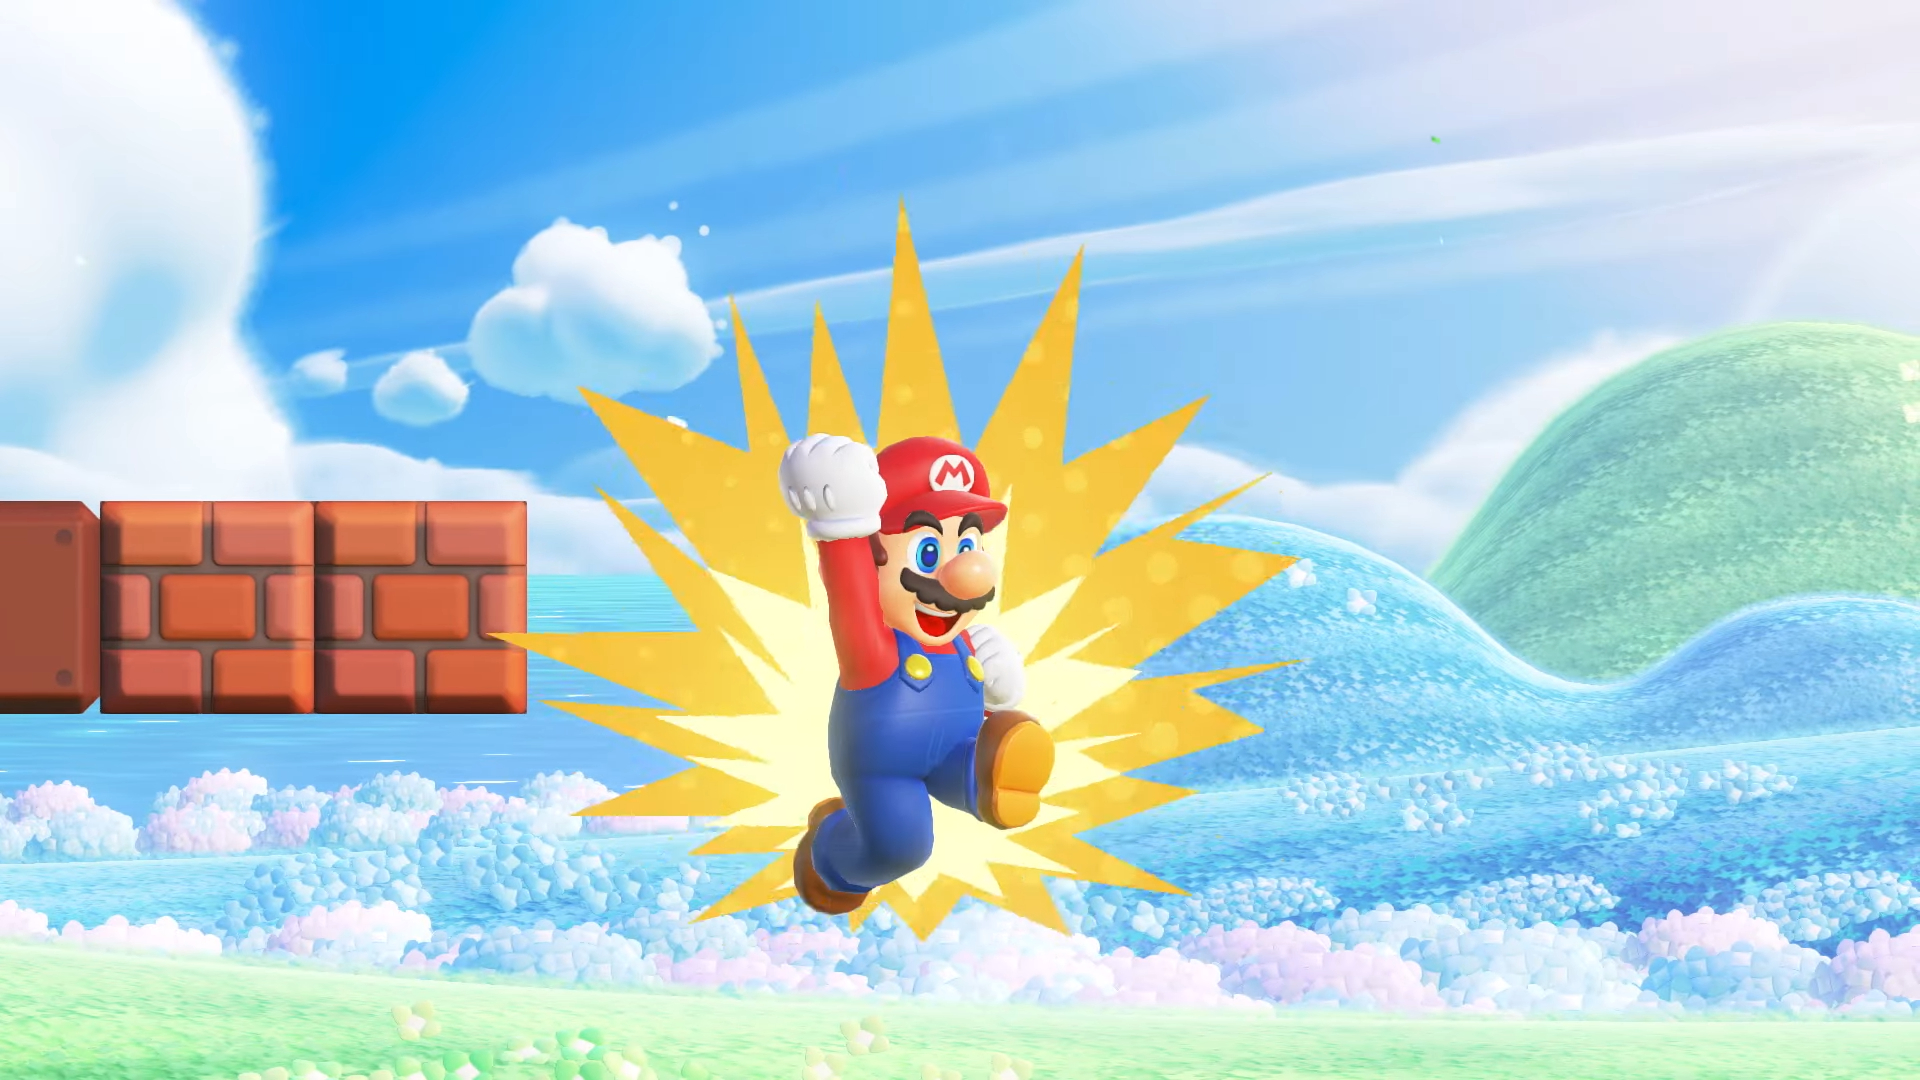 Koka - Super Mario Bros. Wonder: Novo jogo 2D do Mario será lançado para  Nintendo Switch em 20 de outubro